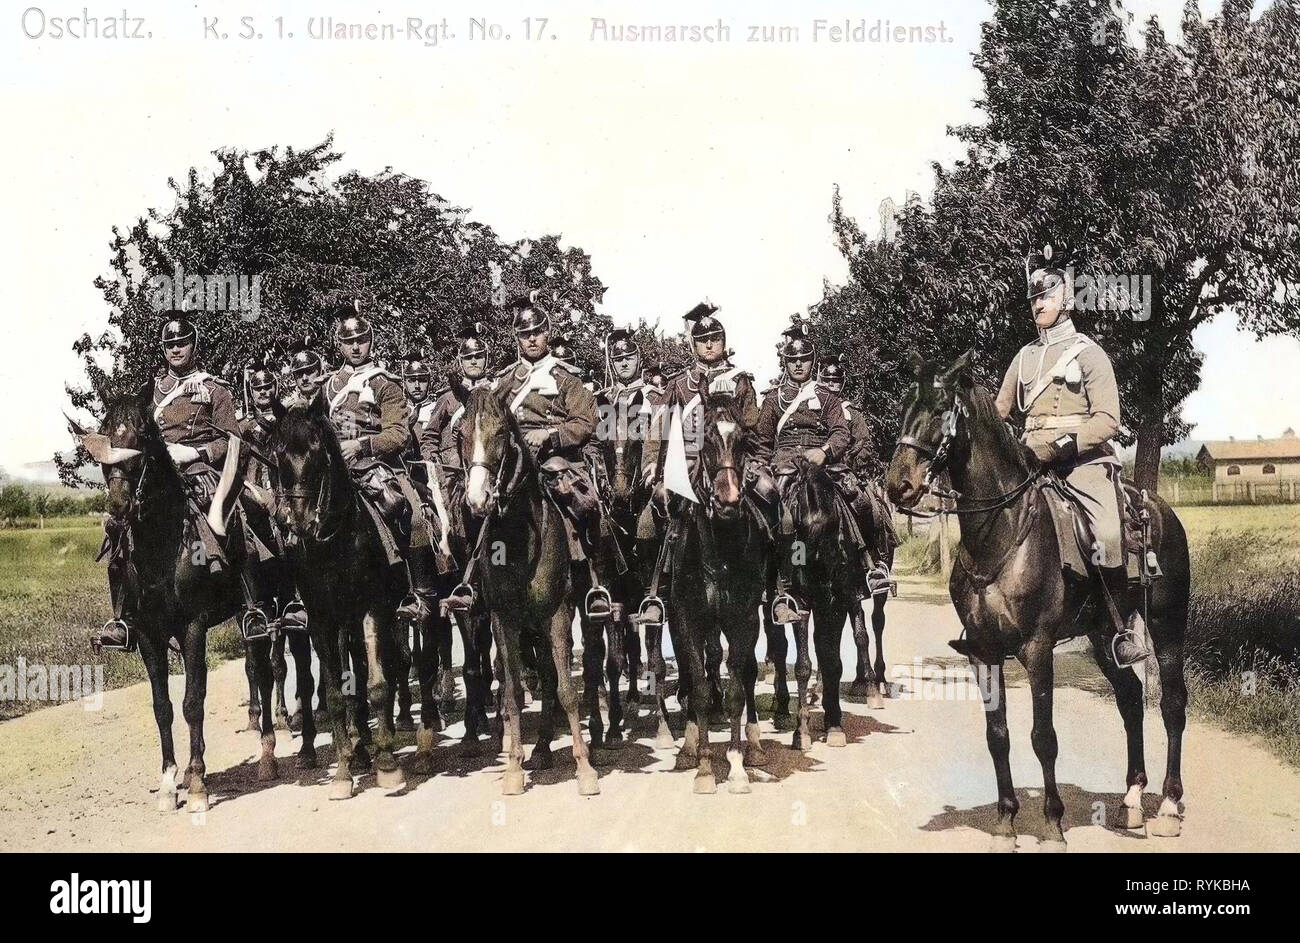 Military use of horses, Avenues in Saxony, 1912, Landkreis Nordsachsen, Oschatz, 1. Königlich Sächsisches Ulanen, Regiment Nr. 17, Ausmarsch zum Feldienst, Germany Stock Photo